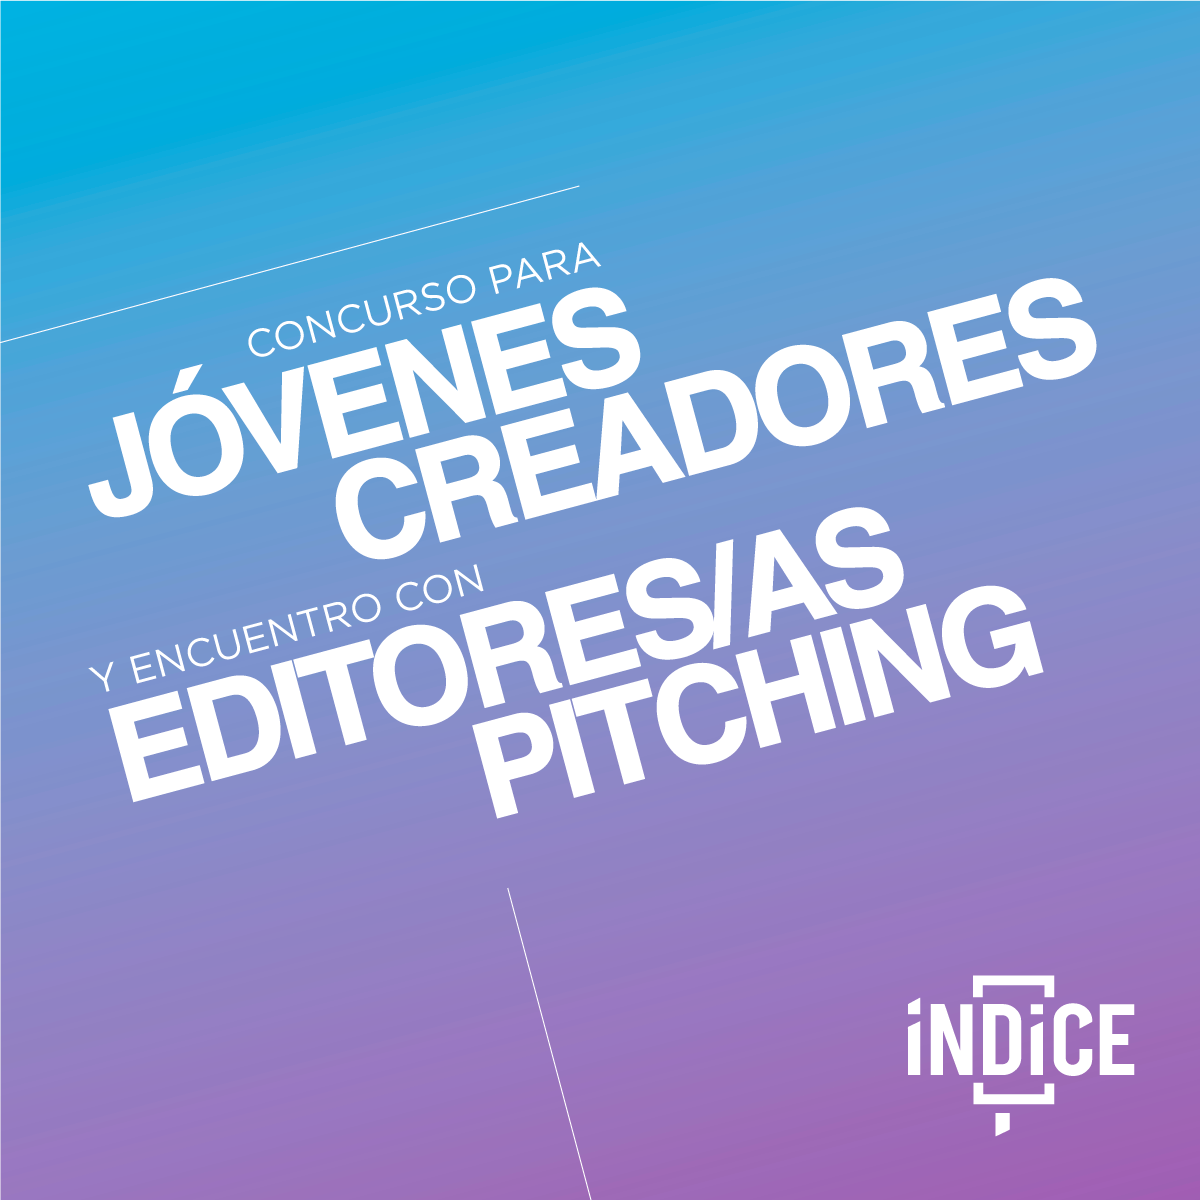 Concurso para Jóvenes Creadores y Encuentro con Editores/as Pitching del Festival Índice 2018